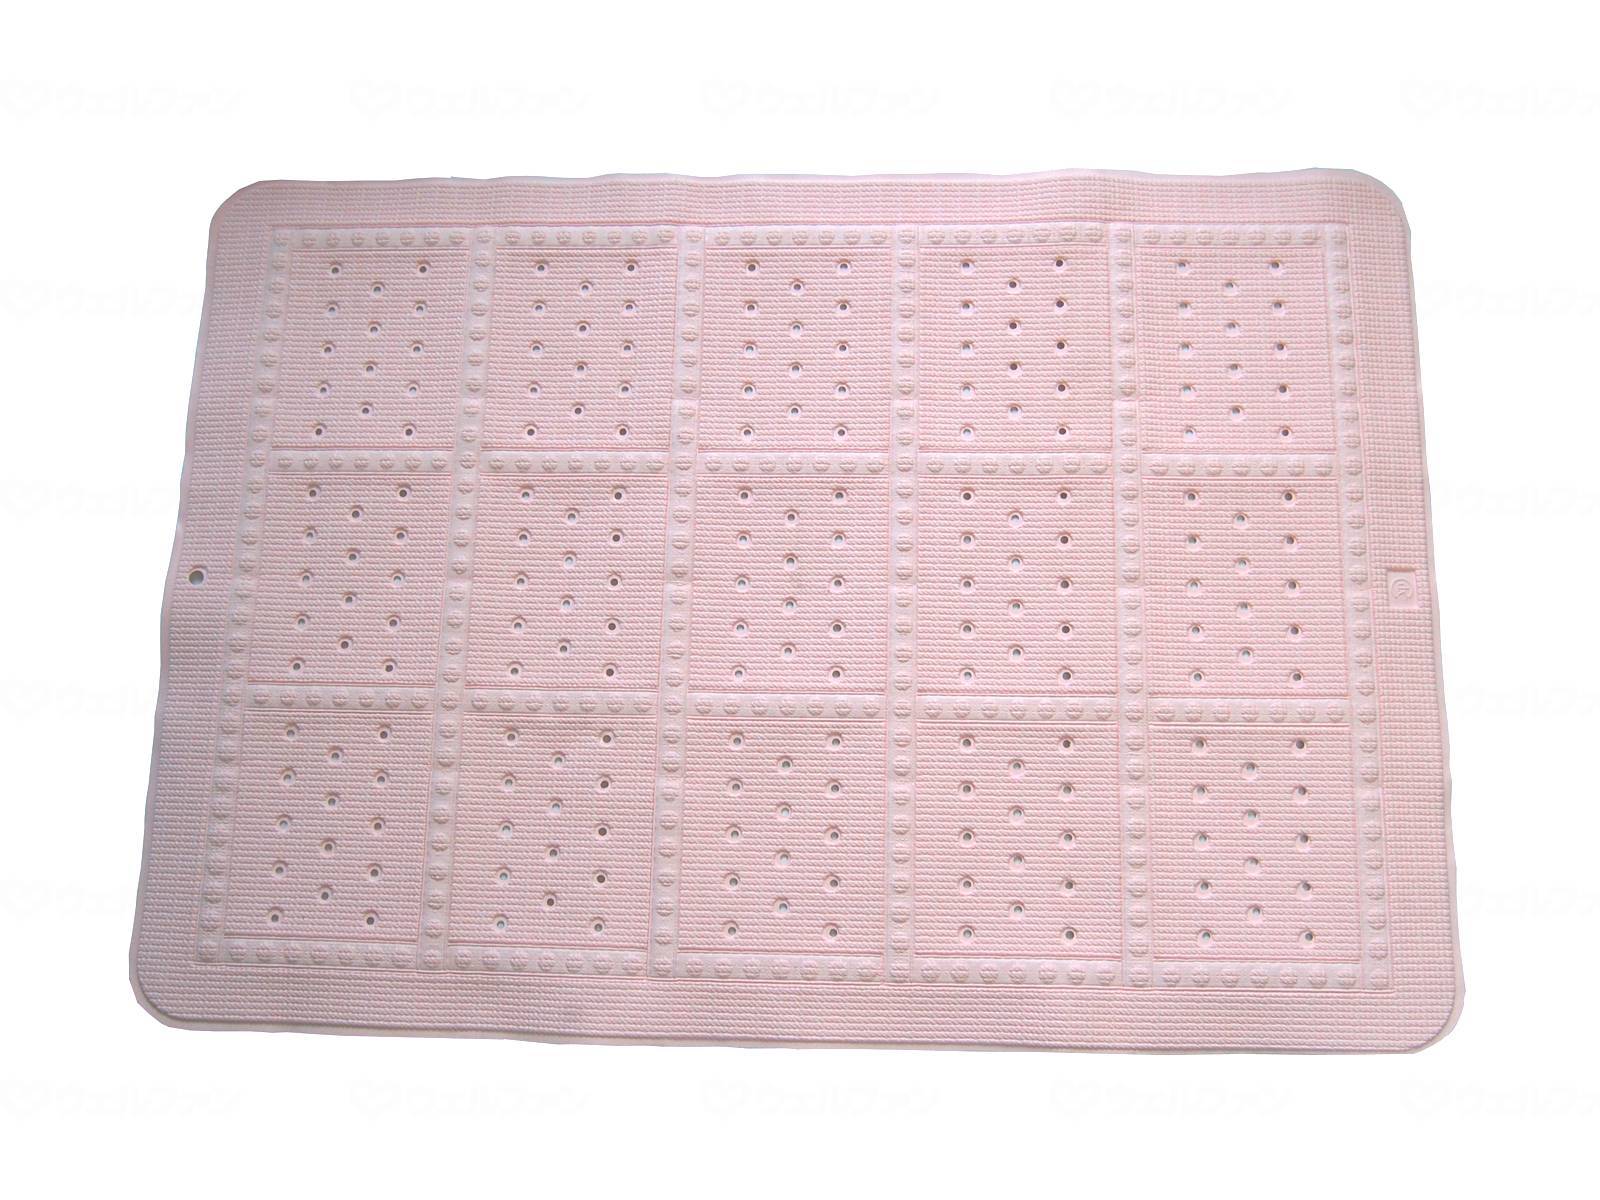 スベリ止メオ風呂マット(スベリ止メバスマット) ピンク ブルー ホワイト XL ベッド